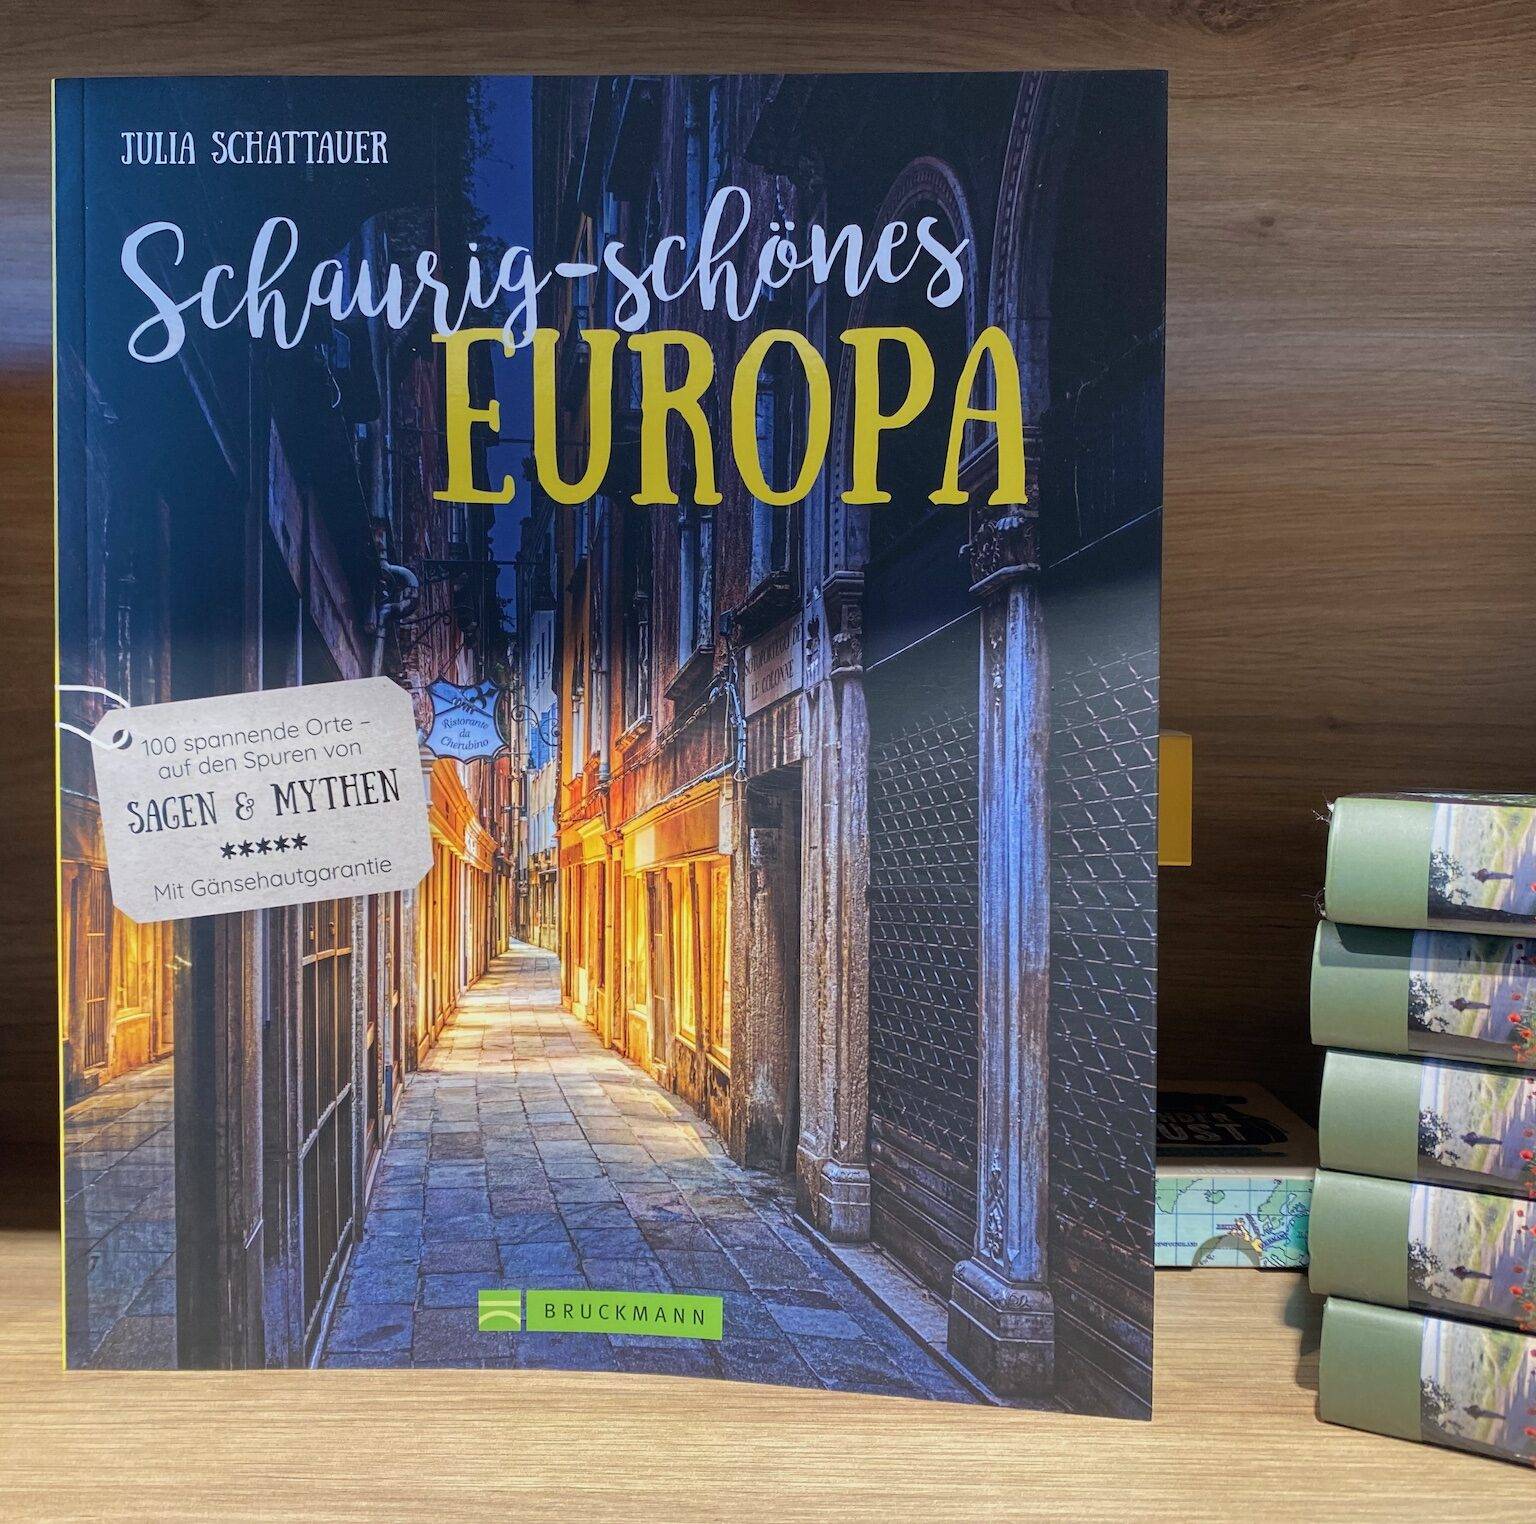 In ihrem Buch "Schaurig-schönes Europa" schreibt Reisebloggerin Julia Schattauer über mystheriöse Orte.